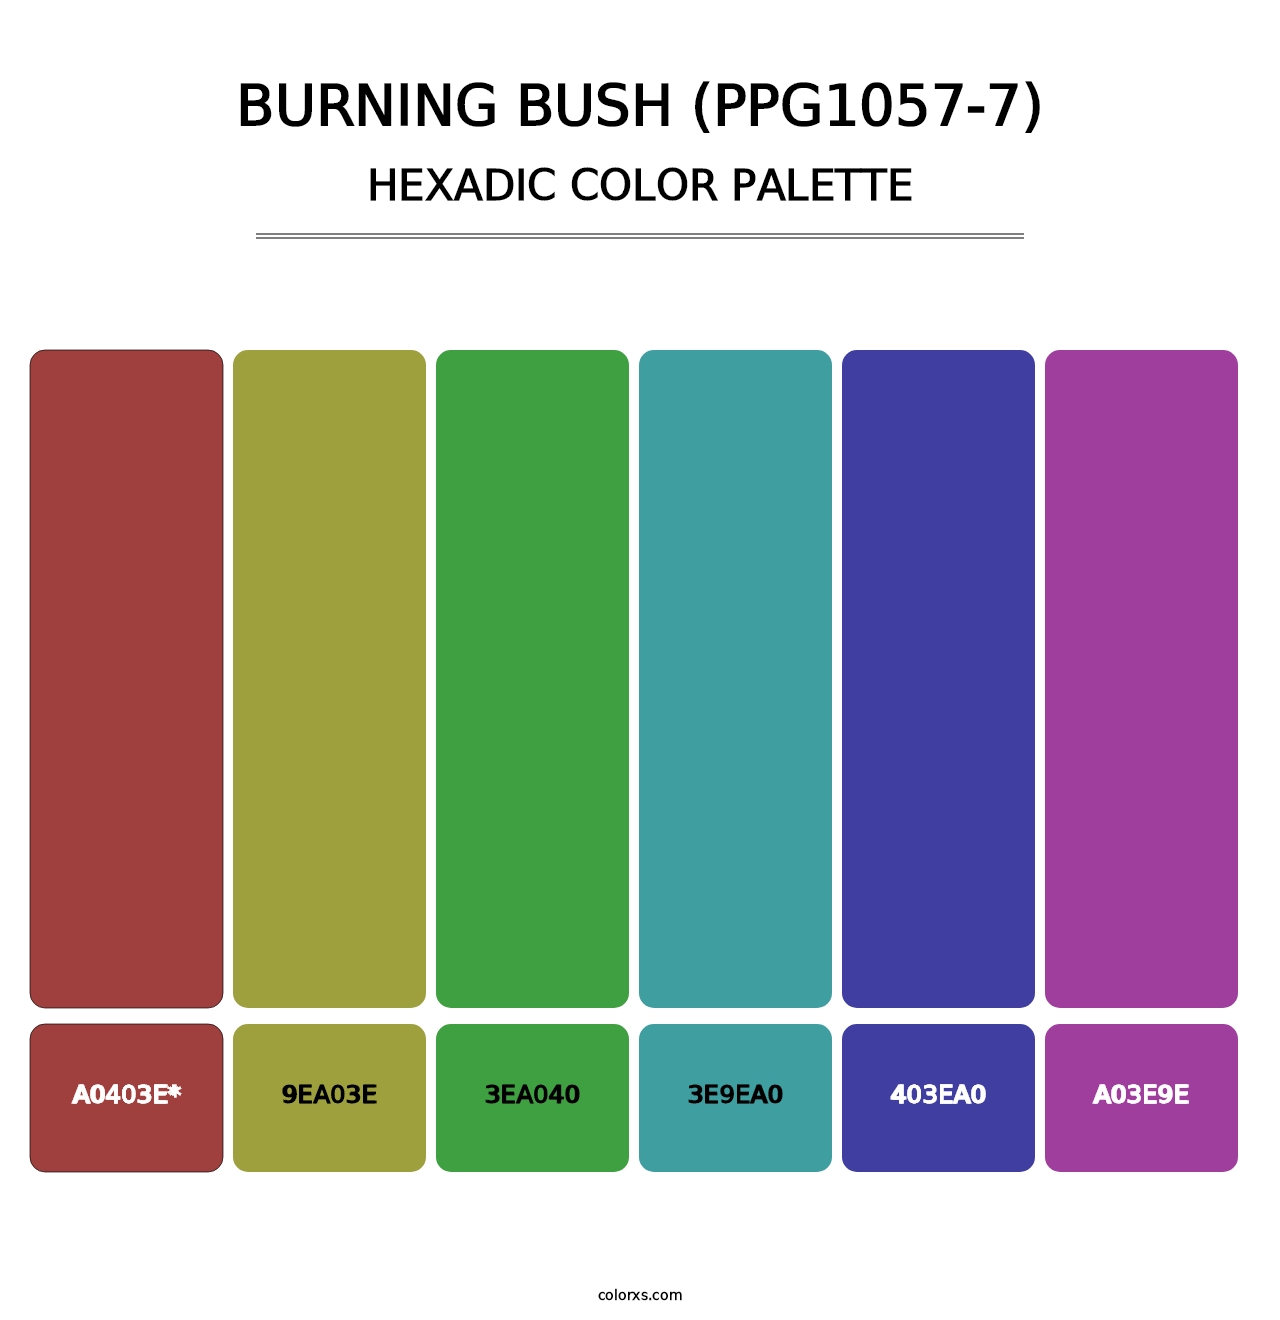 Burning Bush (PPG1057-7) - Hexadic Color Palette